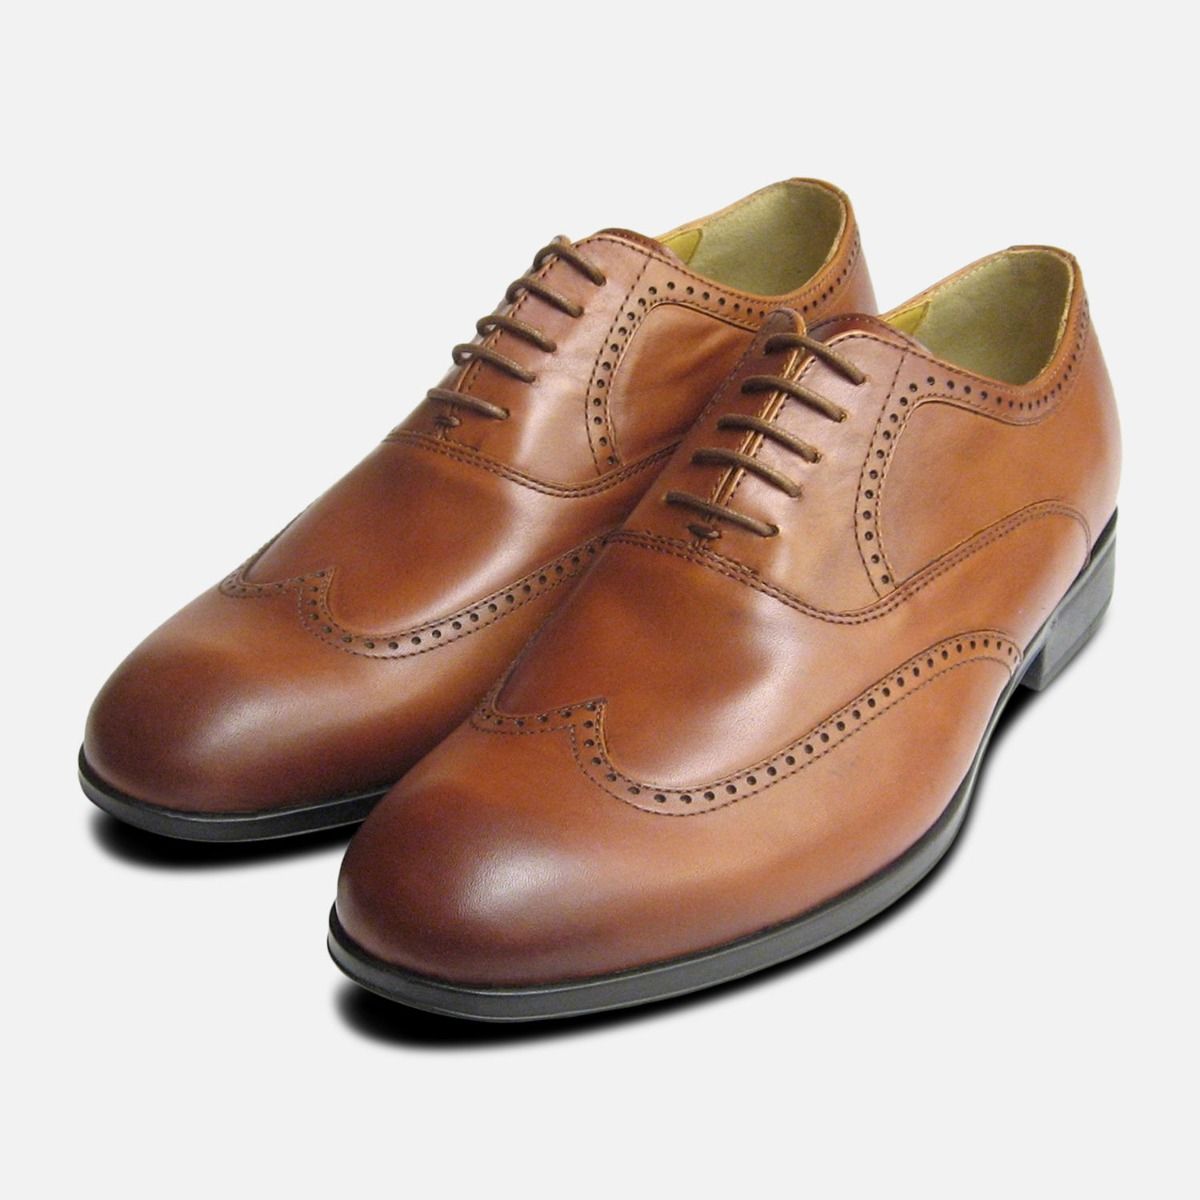 bugatti oxford shoes